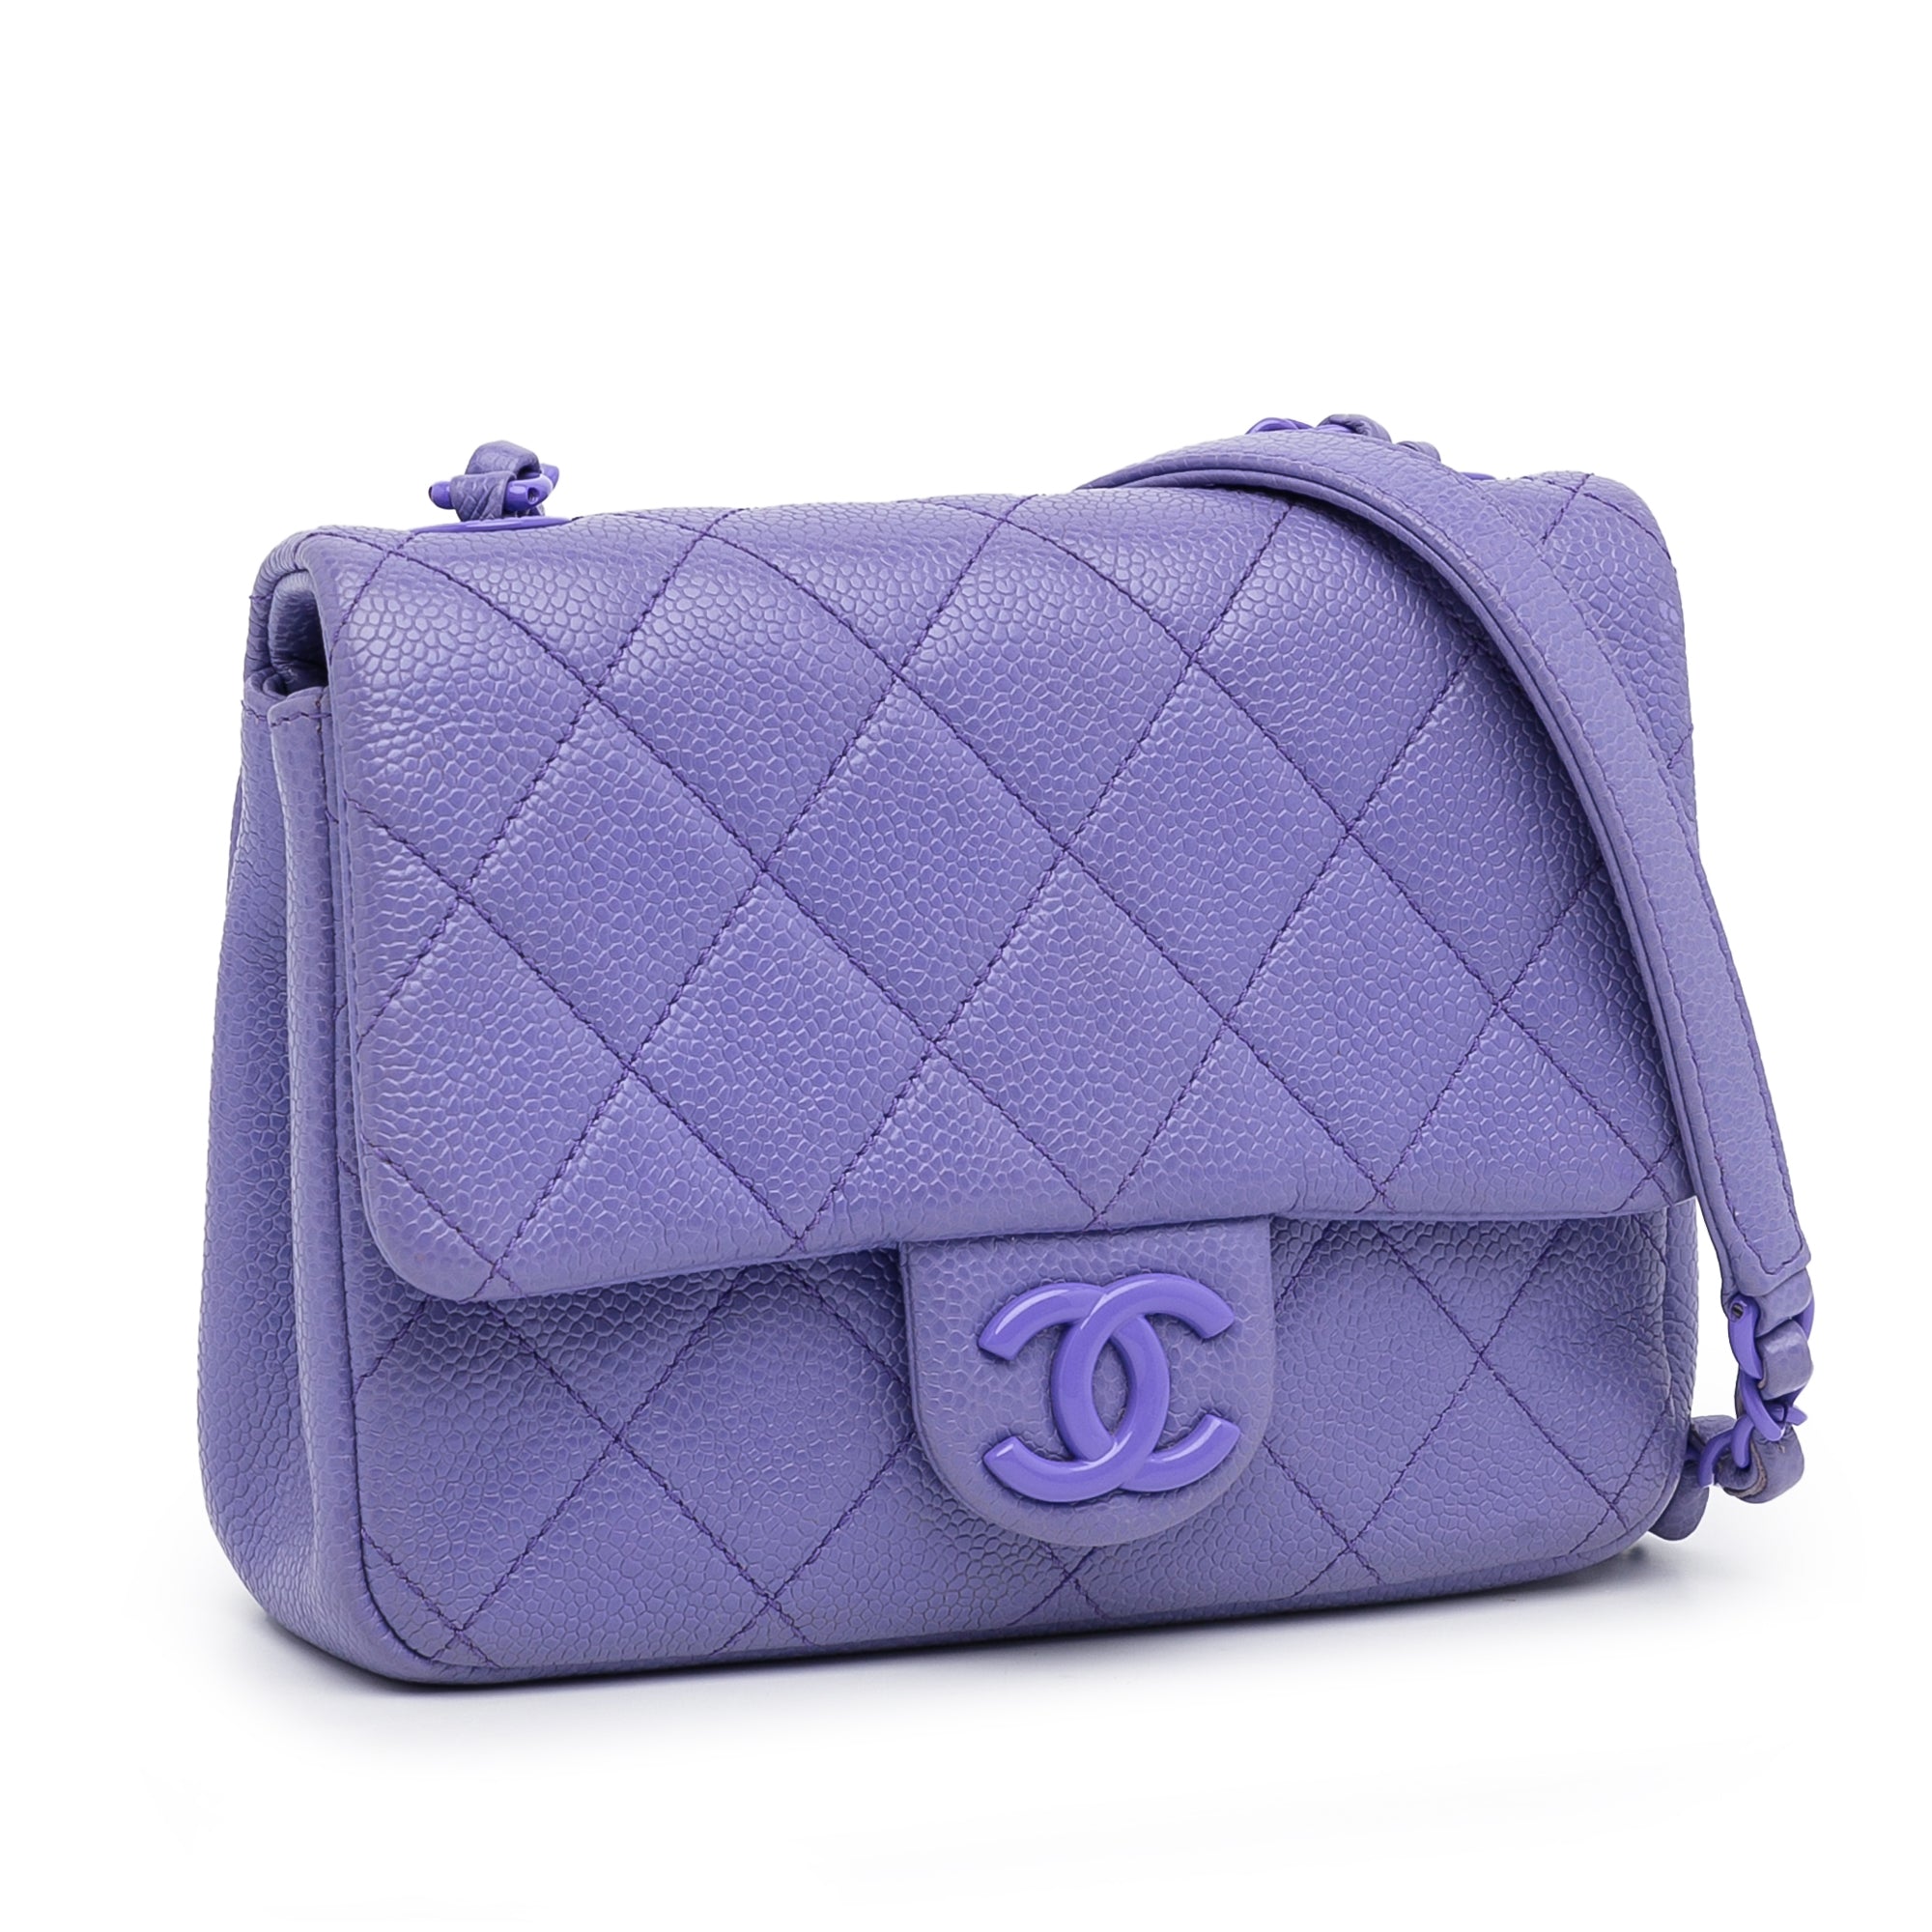 chanel purple tote purse